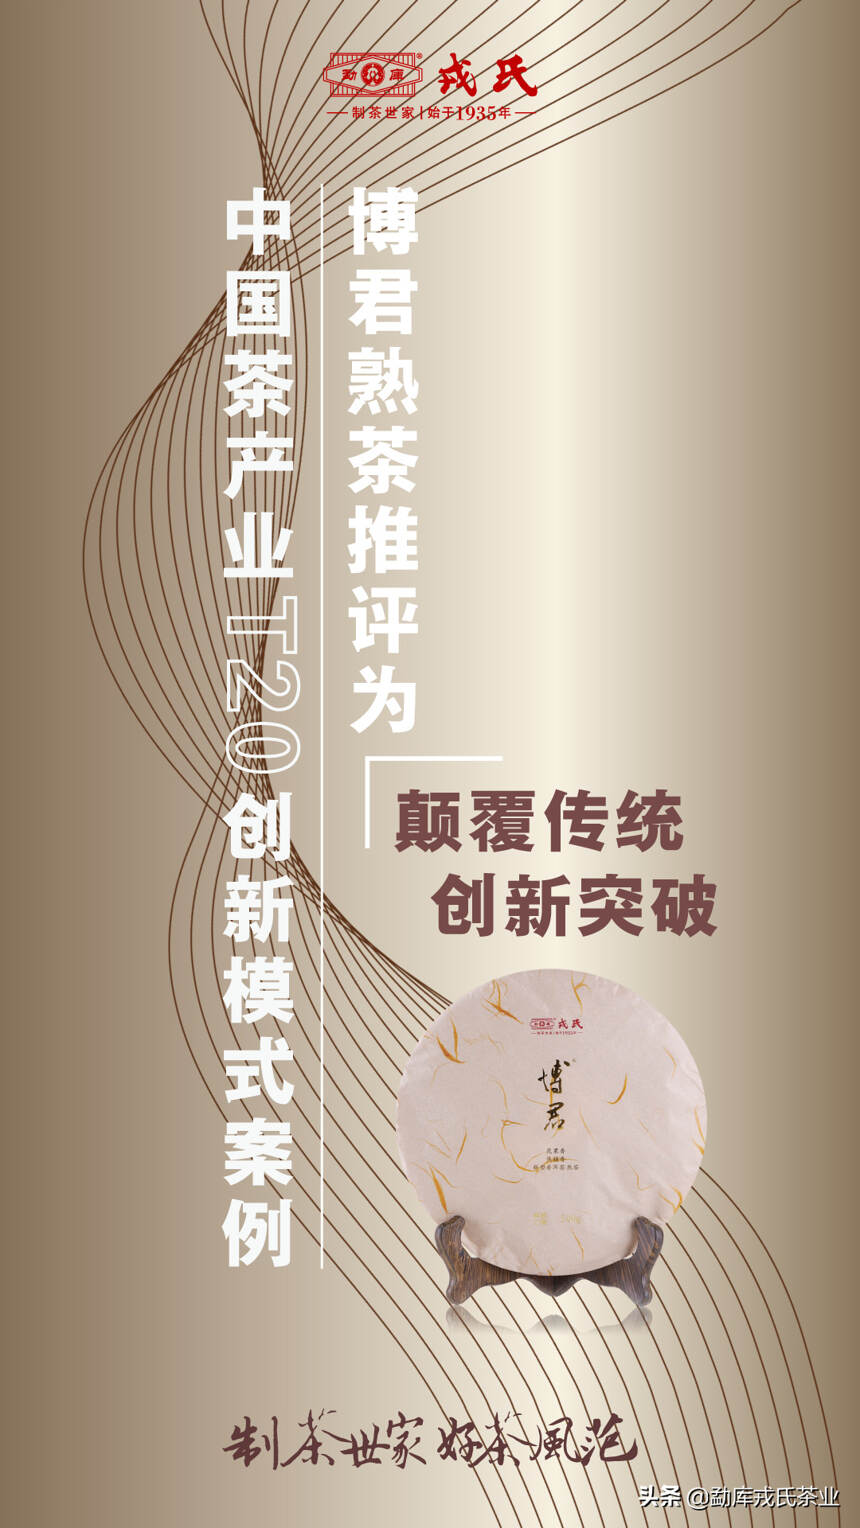 热烈祝贺博君熟茶被推评为中国茶产业T20创新模式案例